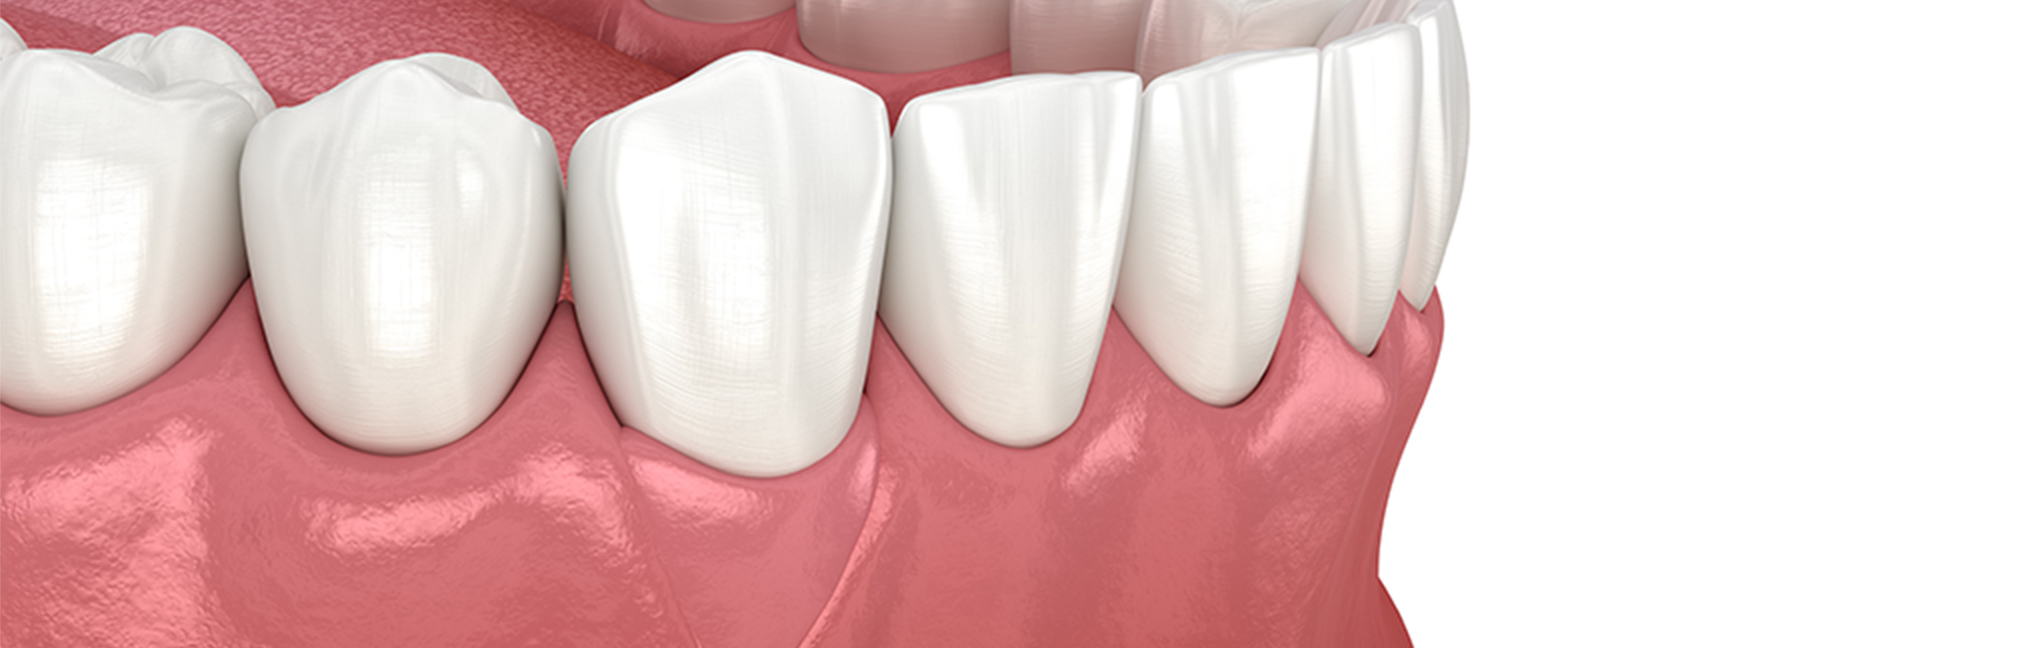 重度な歯周病にも対応できる歯周組織再生療法の実施